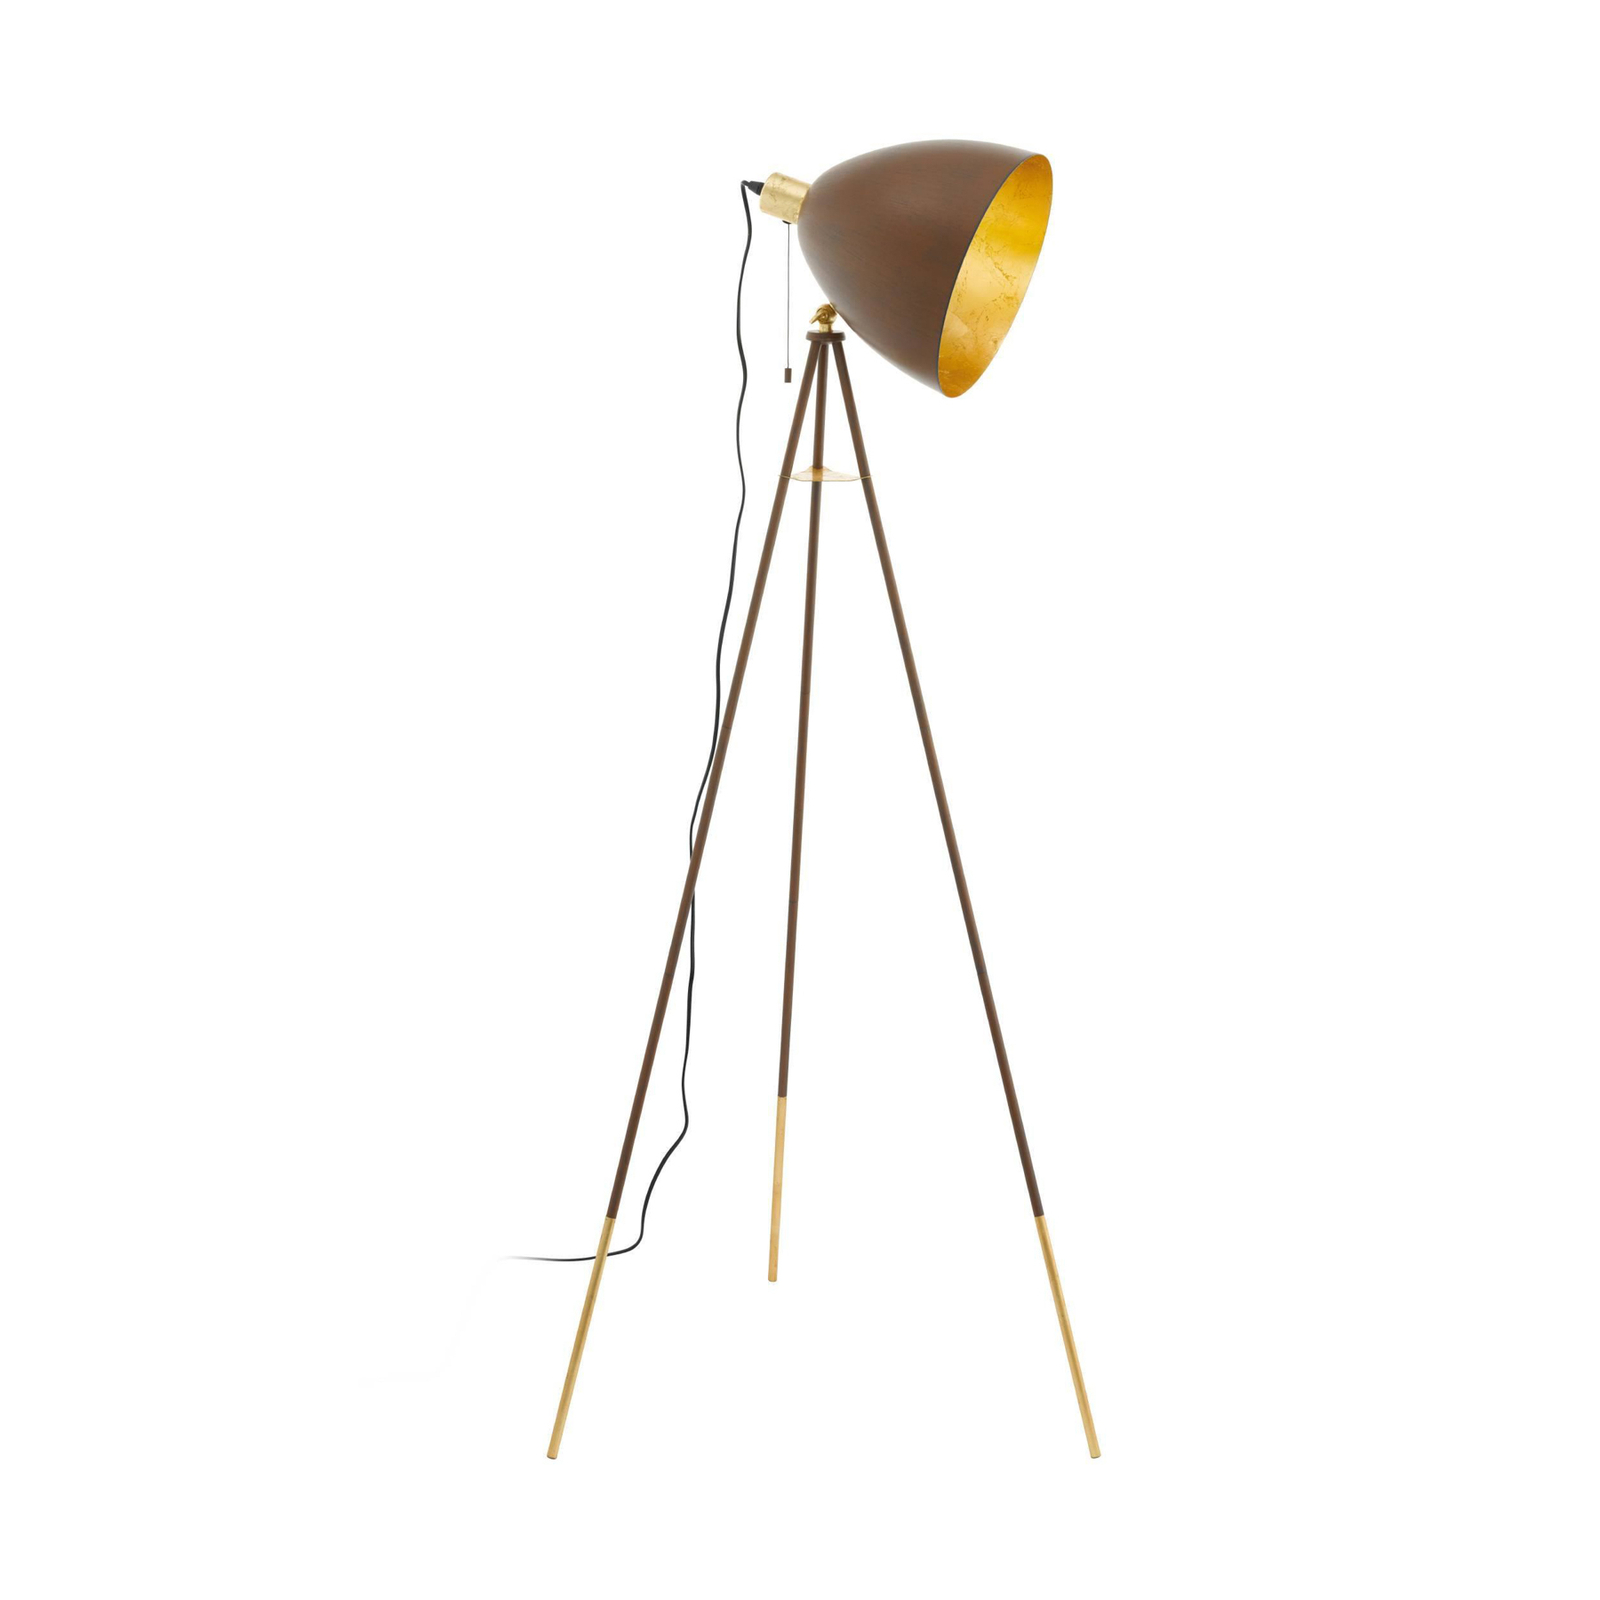 Chester állólámpa, magasság 149 cm, rozsda/arany színű, acél